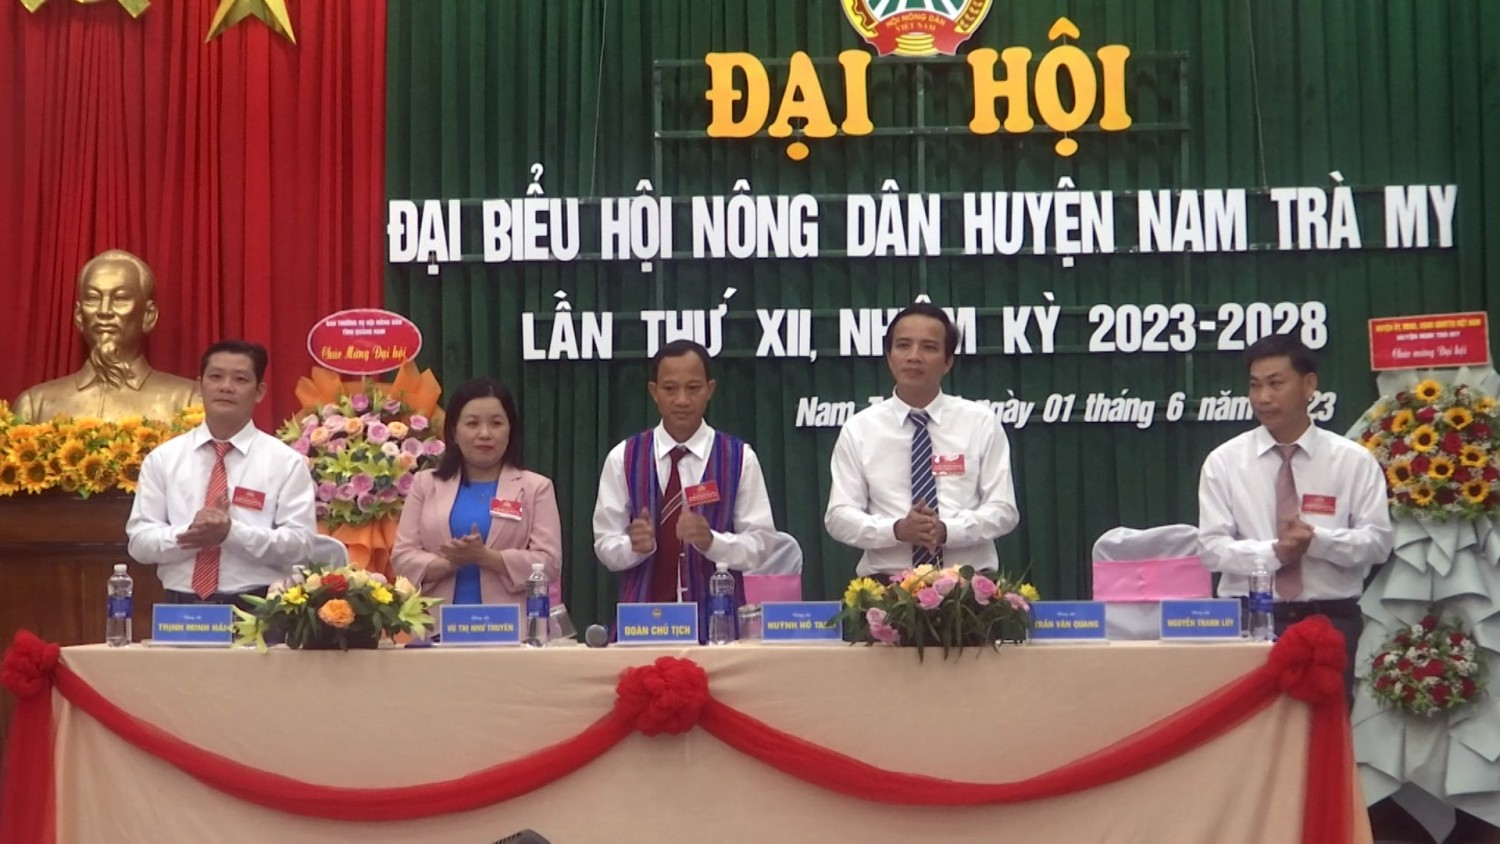 Đại hội đại biểu Hội Nông dân huyện Nam Trà My nhiệm kỳ 2023 - 2028 diễn ra ngày 1/6